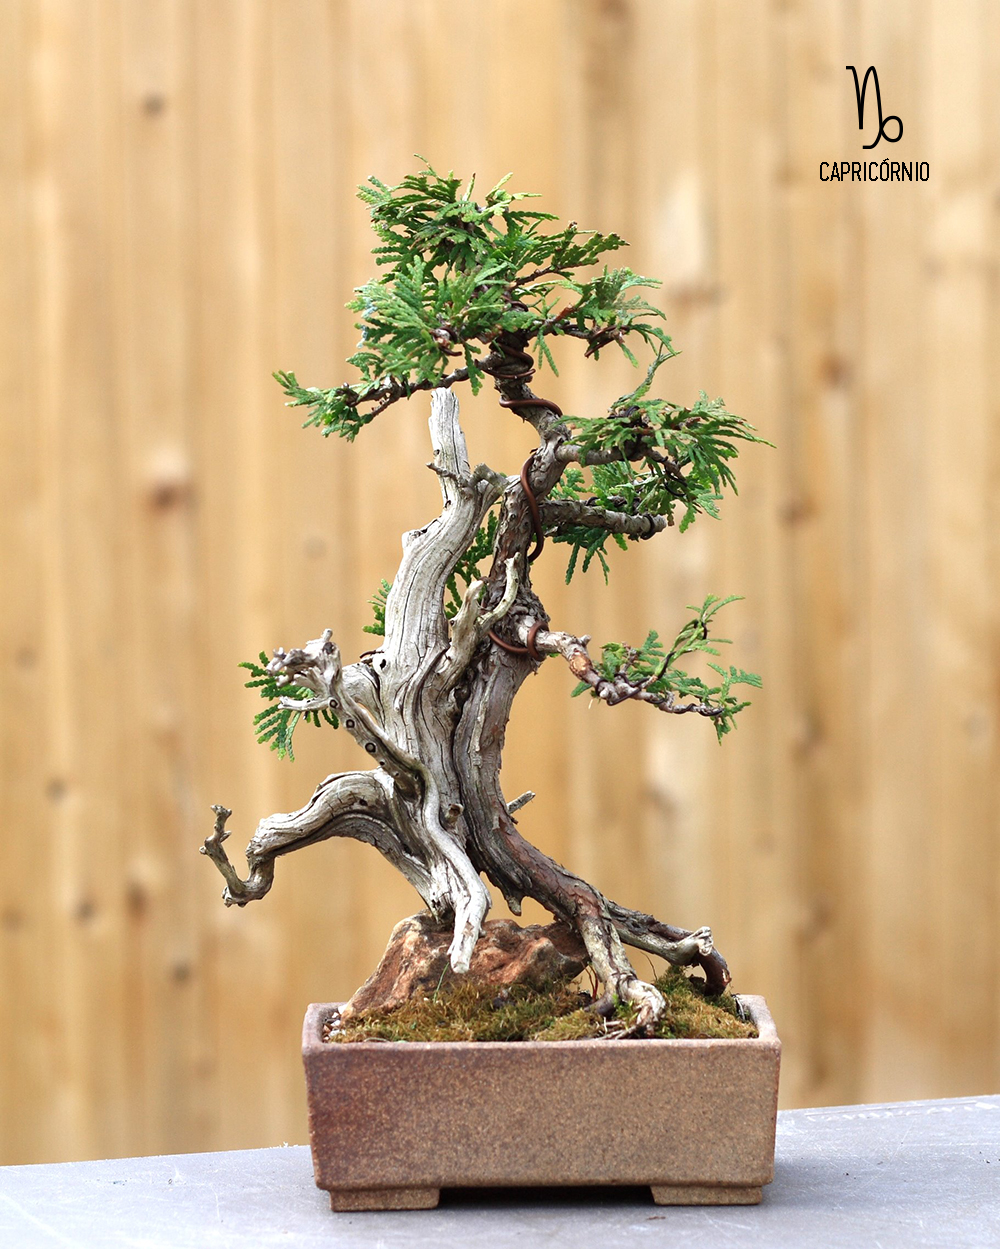 planta-de-capricornio-bonsai